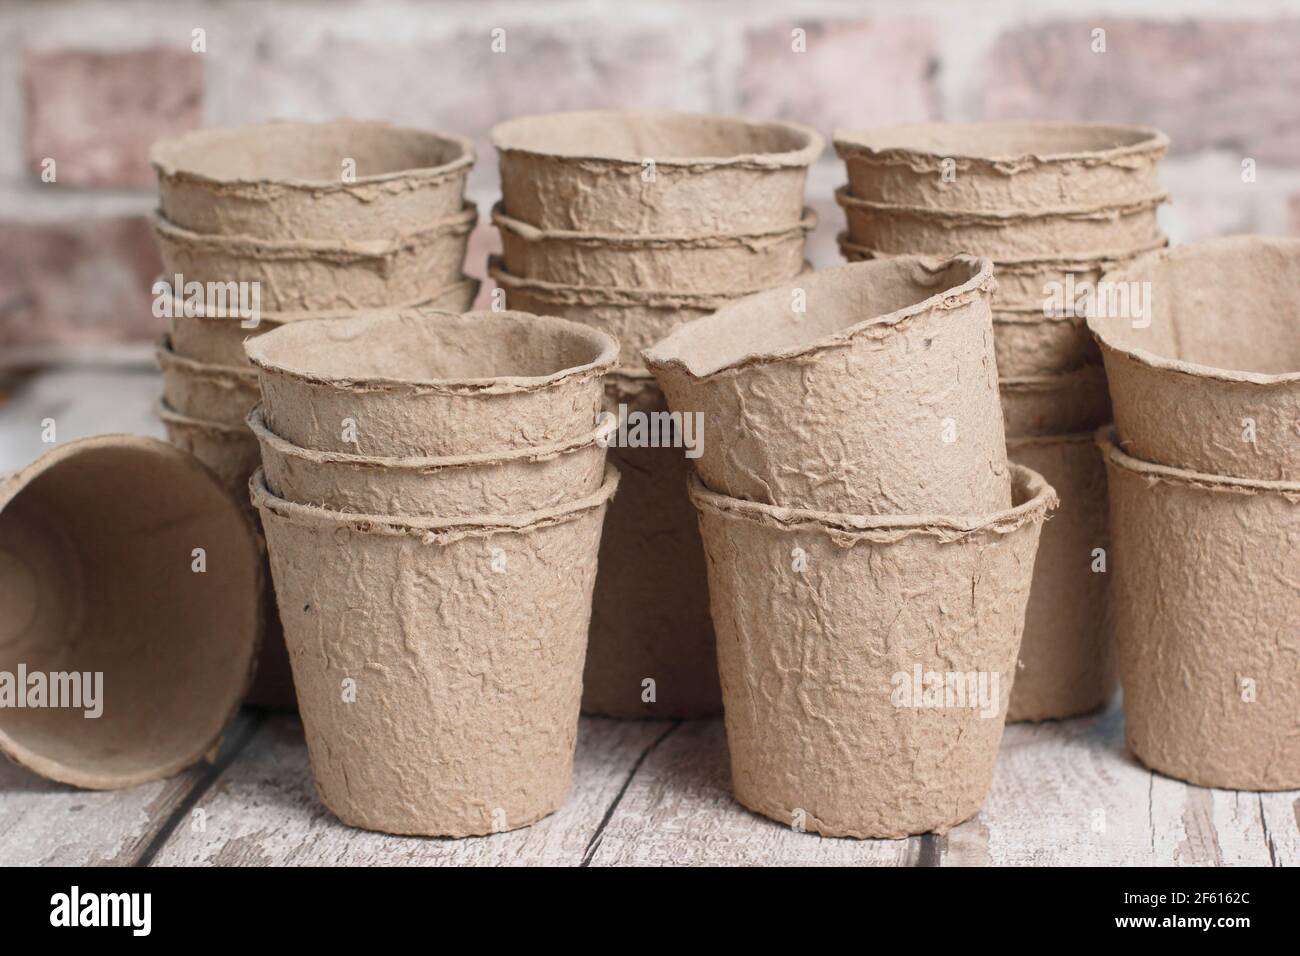 Biodegradable fibre plant pots. Stock Photo